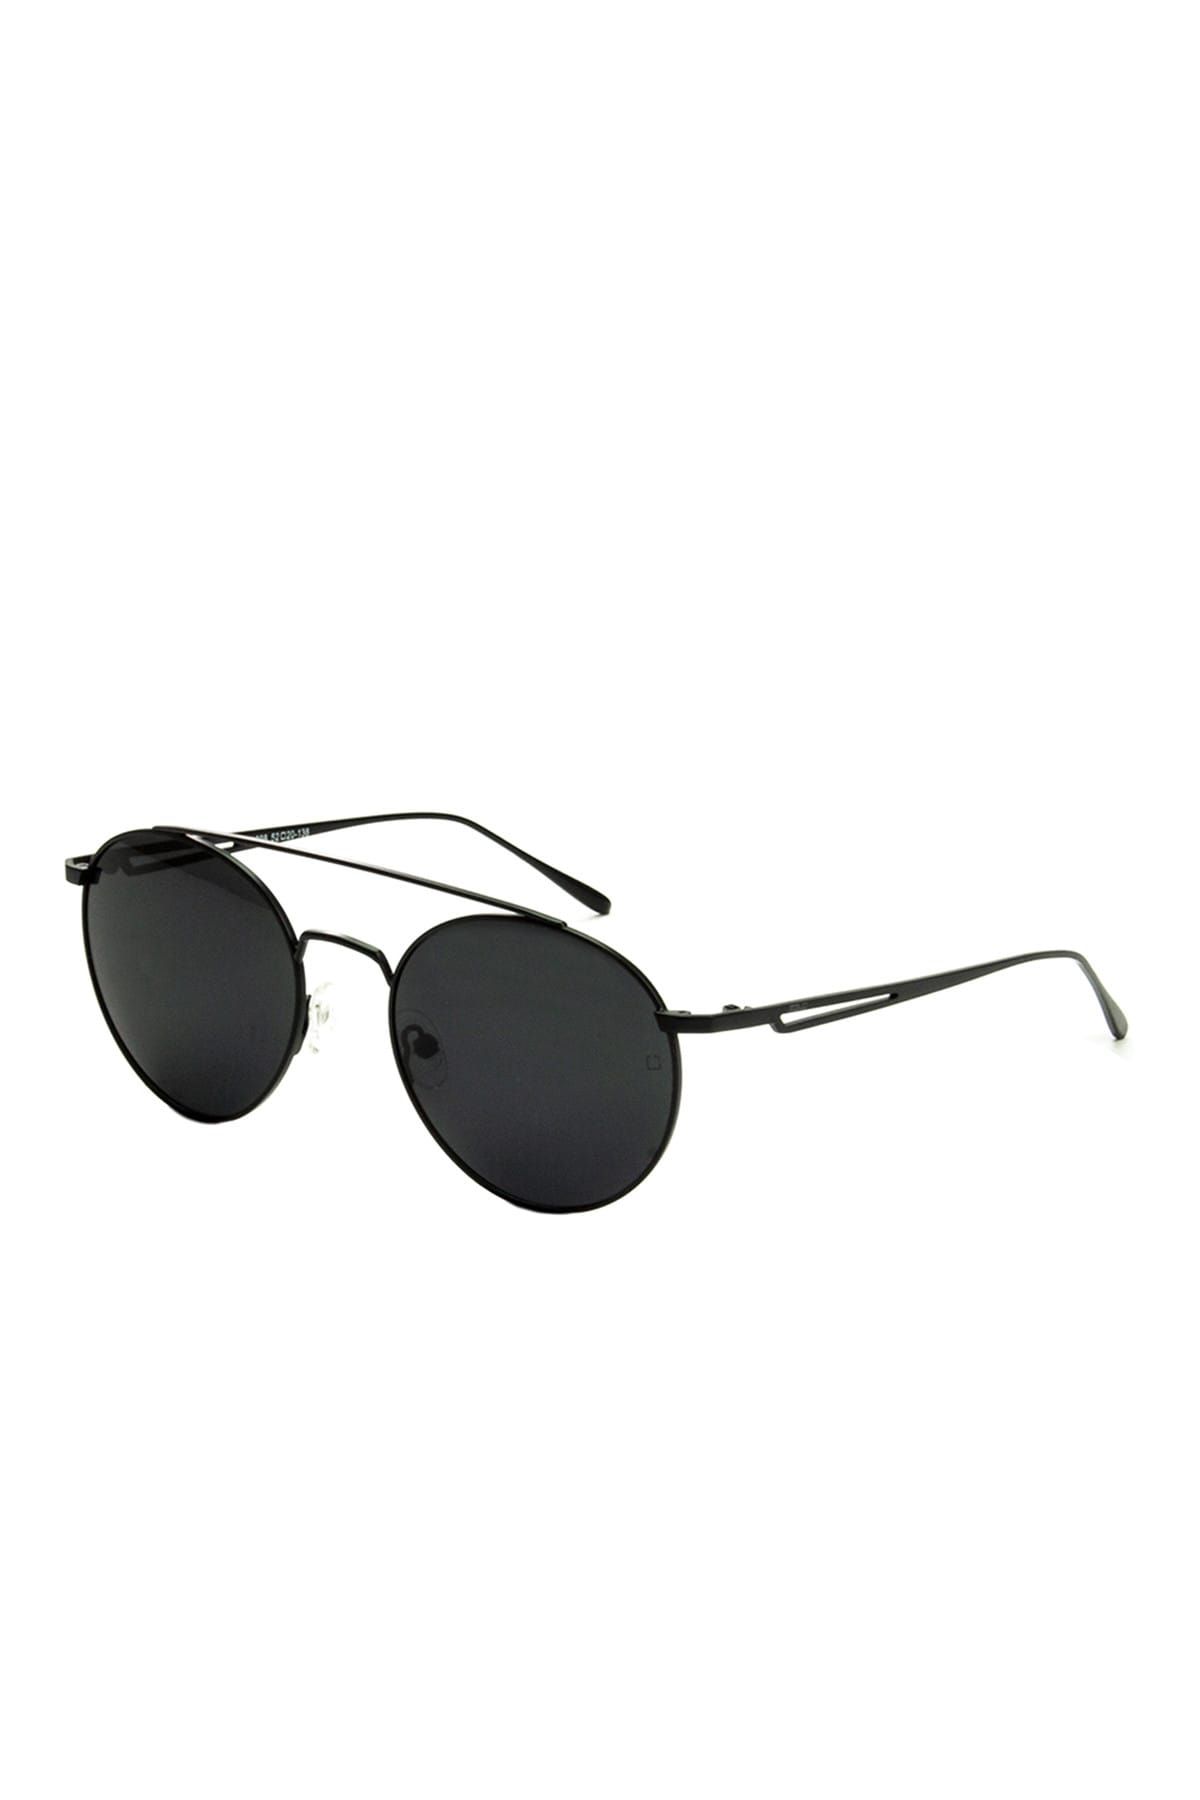 Zolo Eyewear Unisex Zolo Eyewear M1098 Siyah Yuvarlak Polarize Güneş Gözlüğü